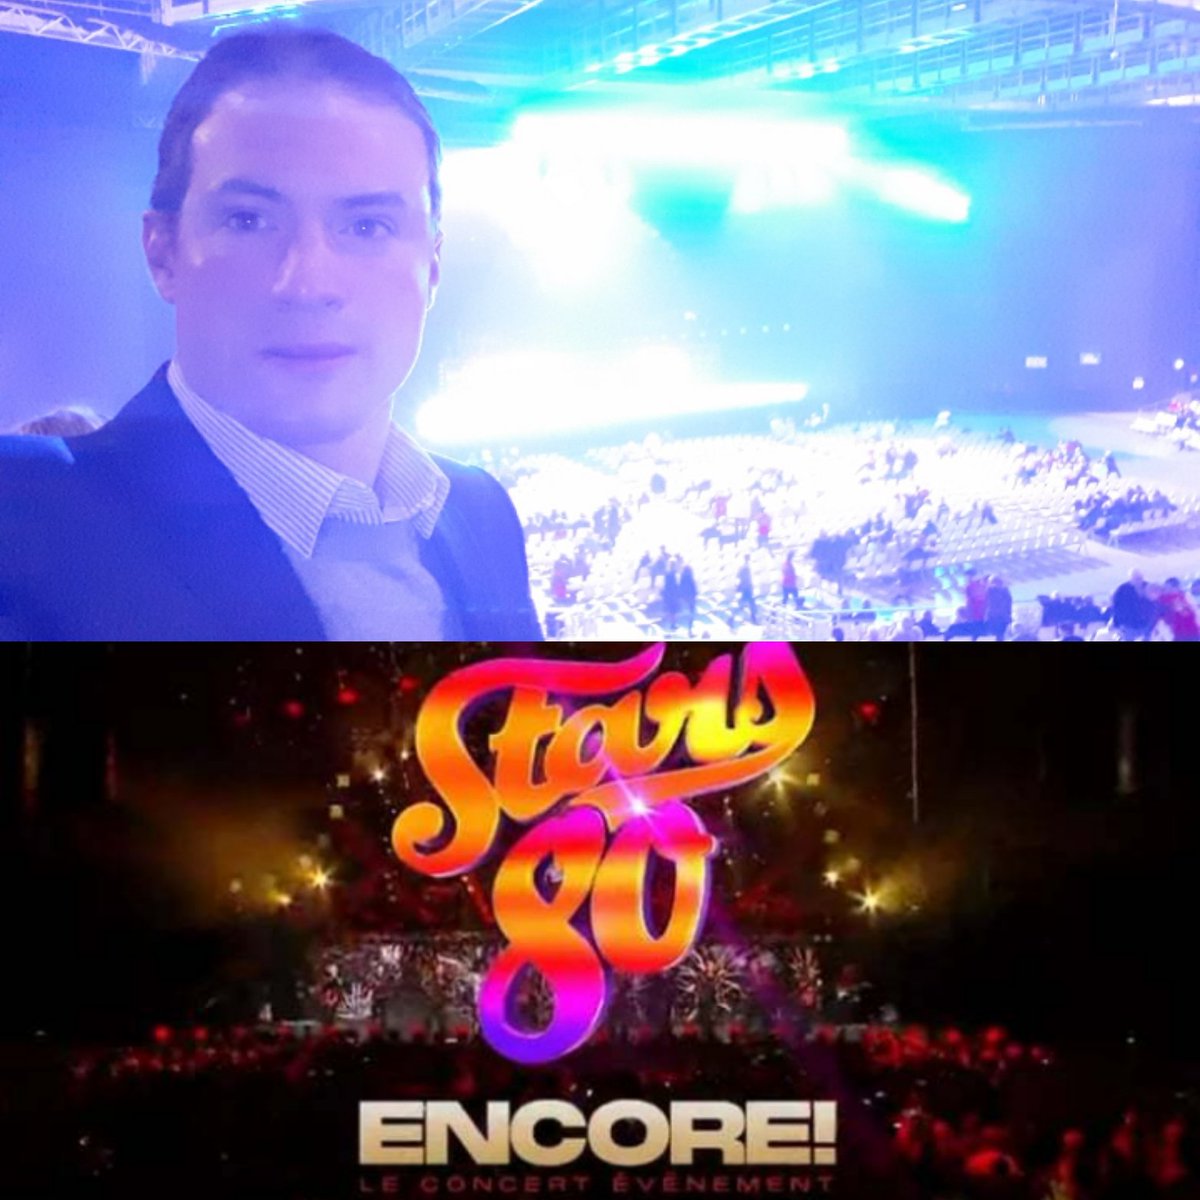 Et ce soir, notre @ZENITHROUEN accueille le concert événement 'Star 80 Encore' ! C'est parti ! Production @DecibelsProd_ @thomaslangmann_